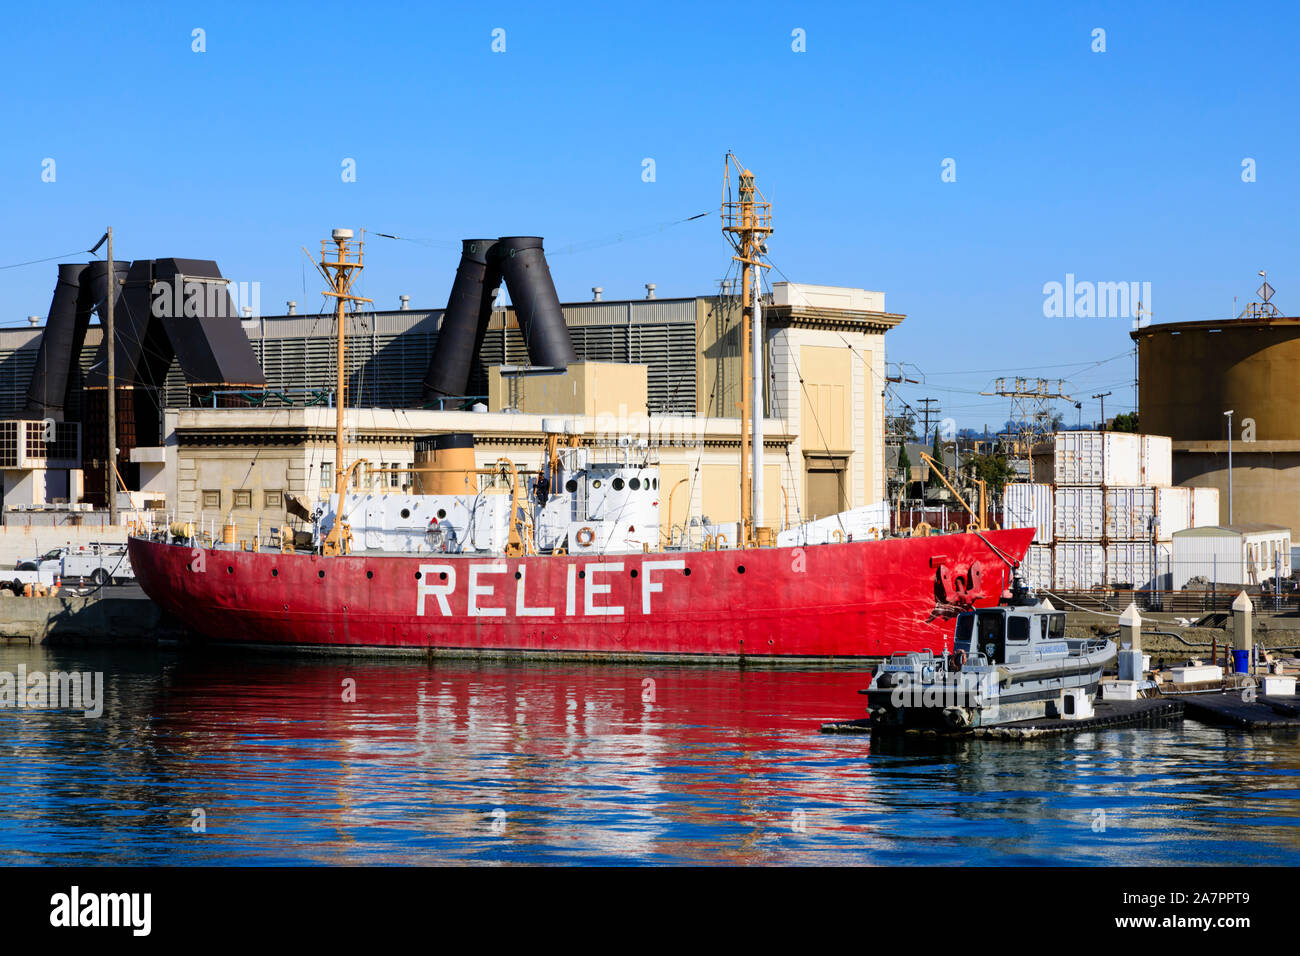 Relief Feuerschiff Museum, Hafen von Oakland, Alameda County, Kalifornien, Vereinigte Staaten von Amerika Stockfoto